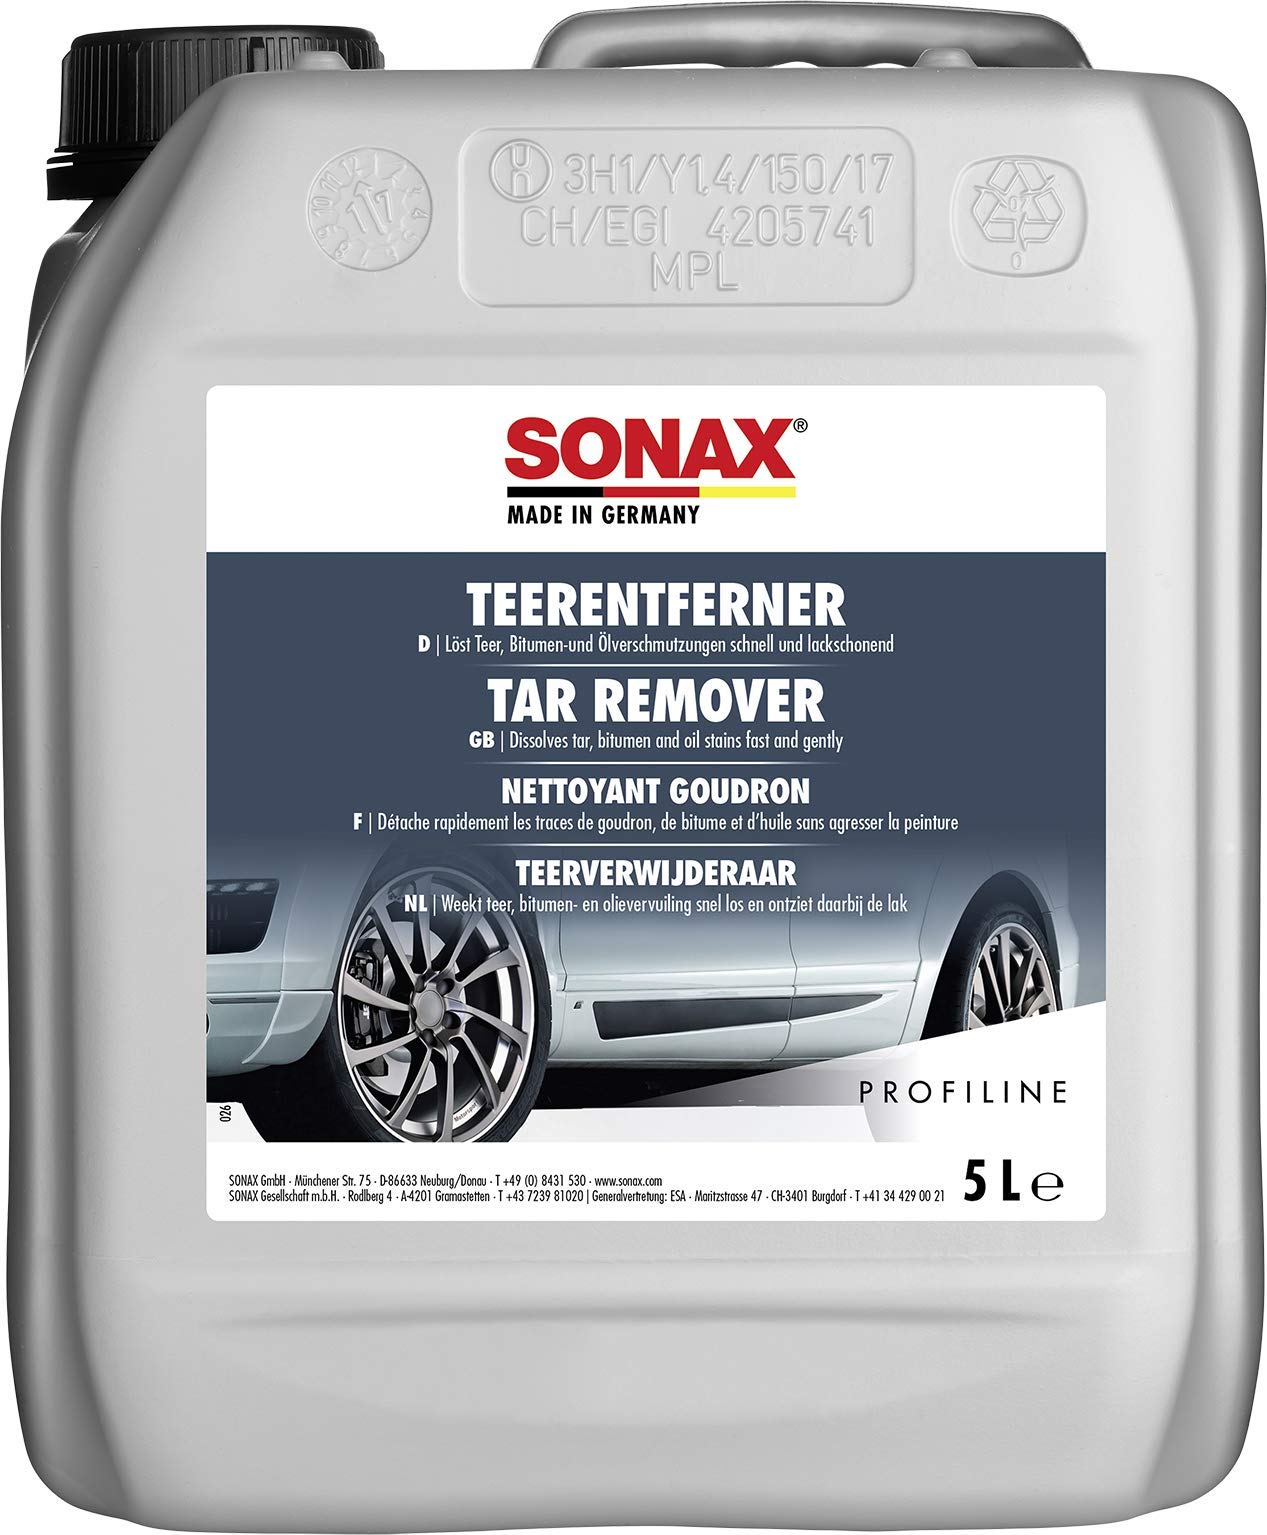 SONAX PROFILINE TeerEntferner (5 Liter) löst schonend und gründlich hartnäckige Verschmutzungen wie Teer- und Ölflecken von Lack und Chrom | Art-Nr. 03045050